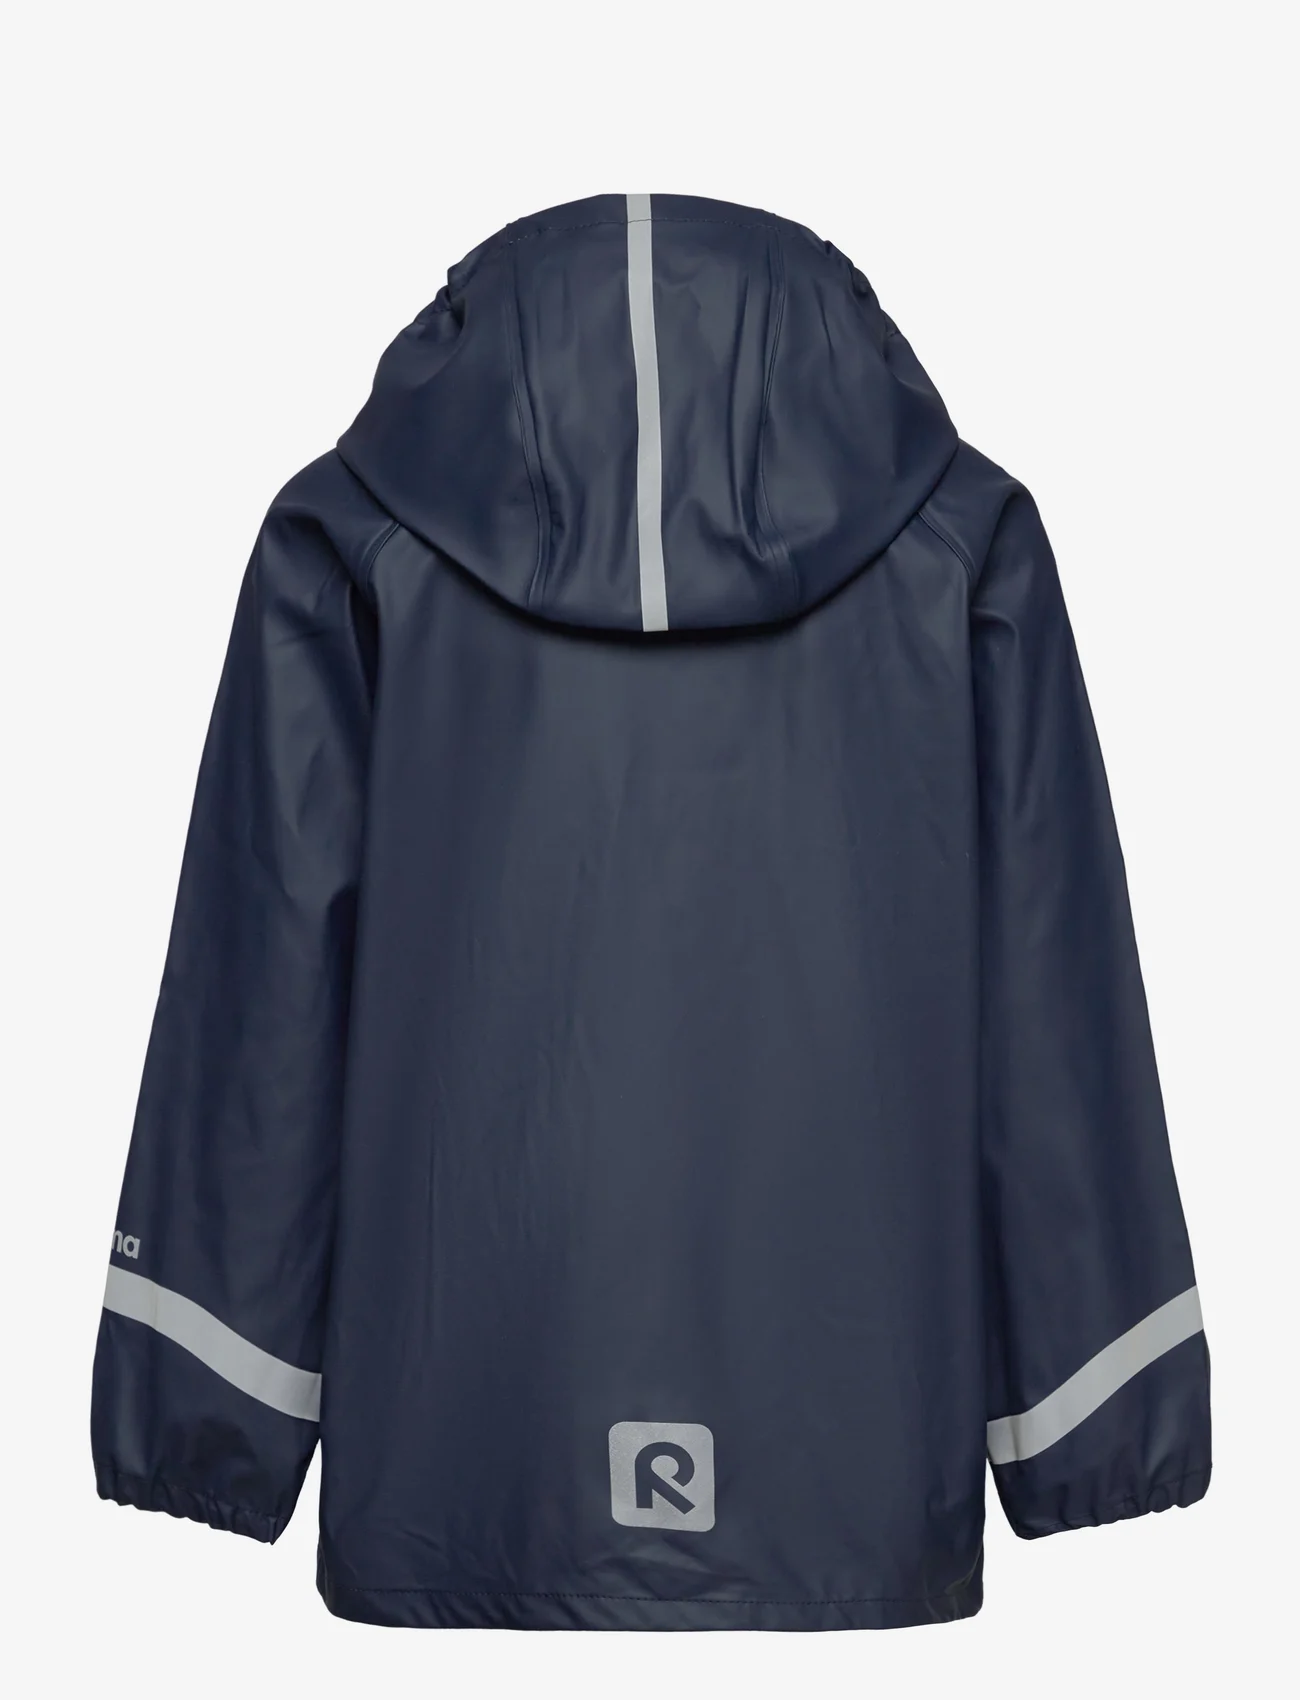 Reima - Raincoat, Lampi - rain jackets - navy - 1